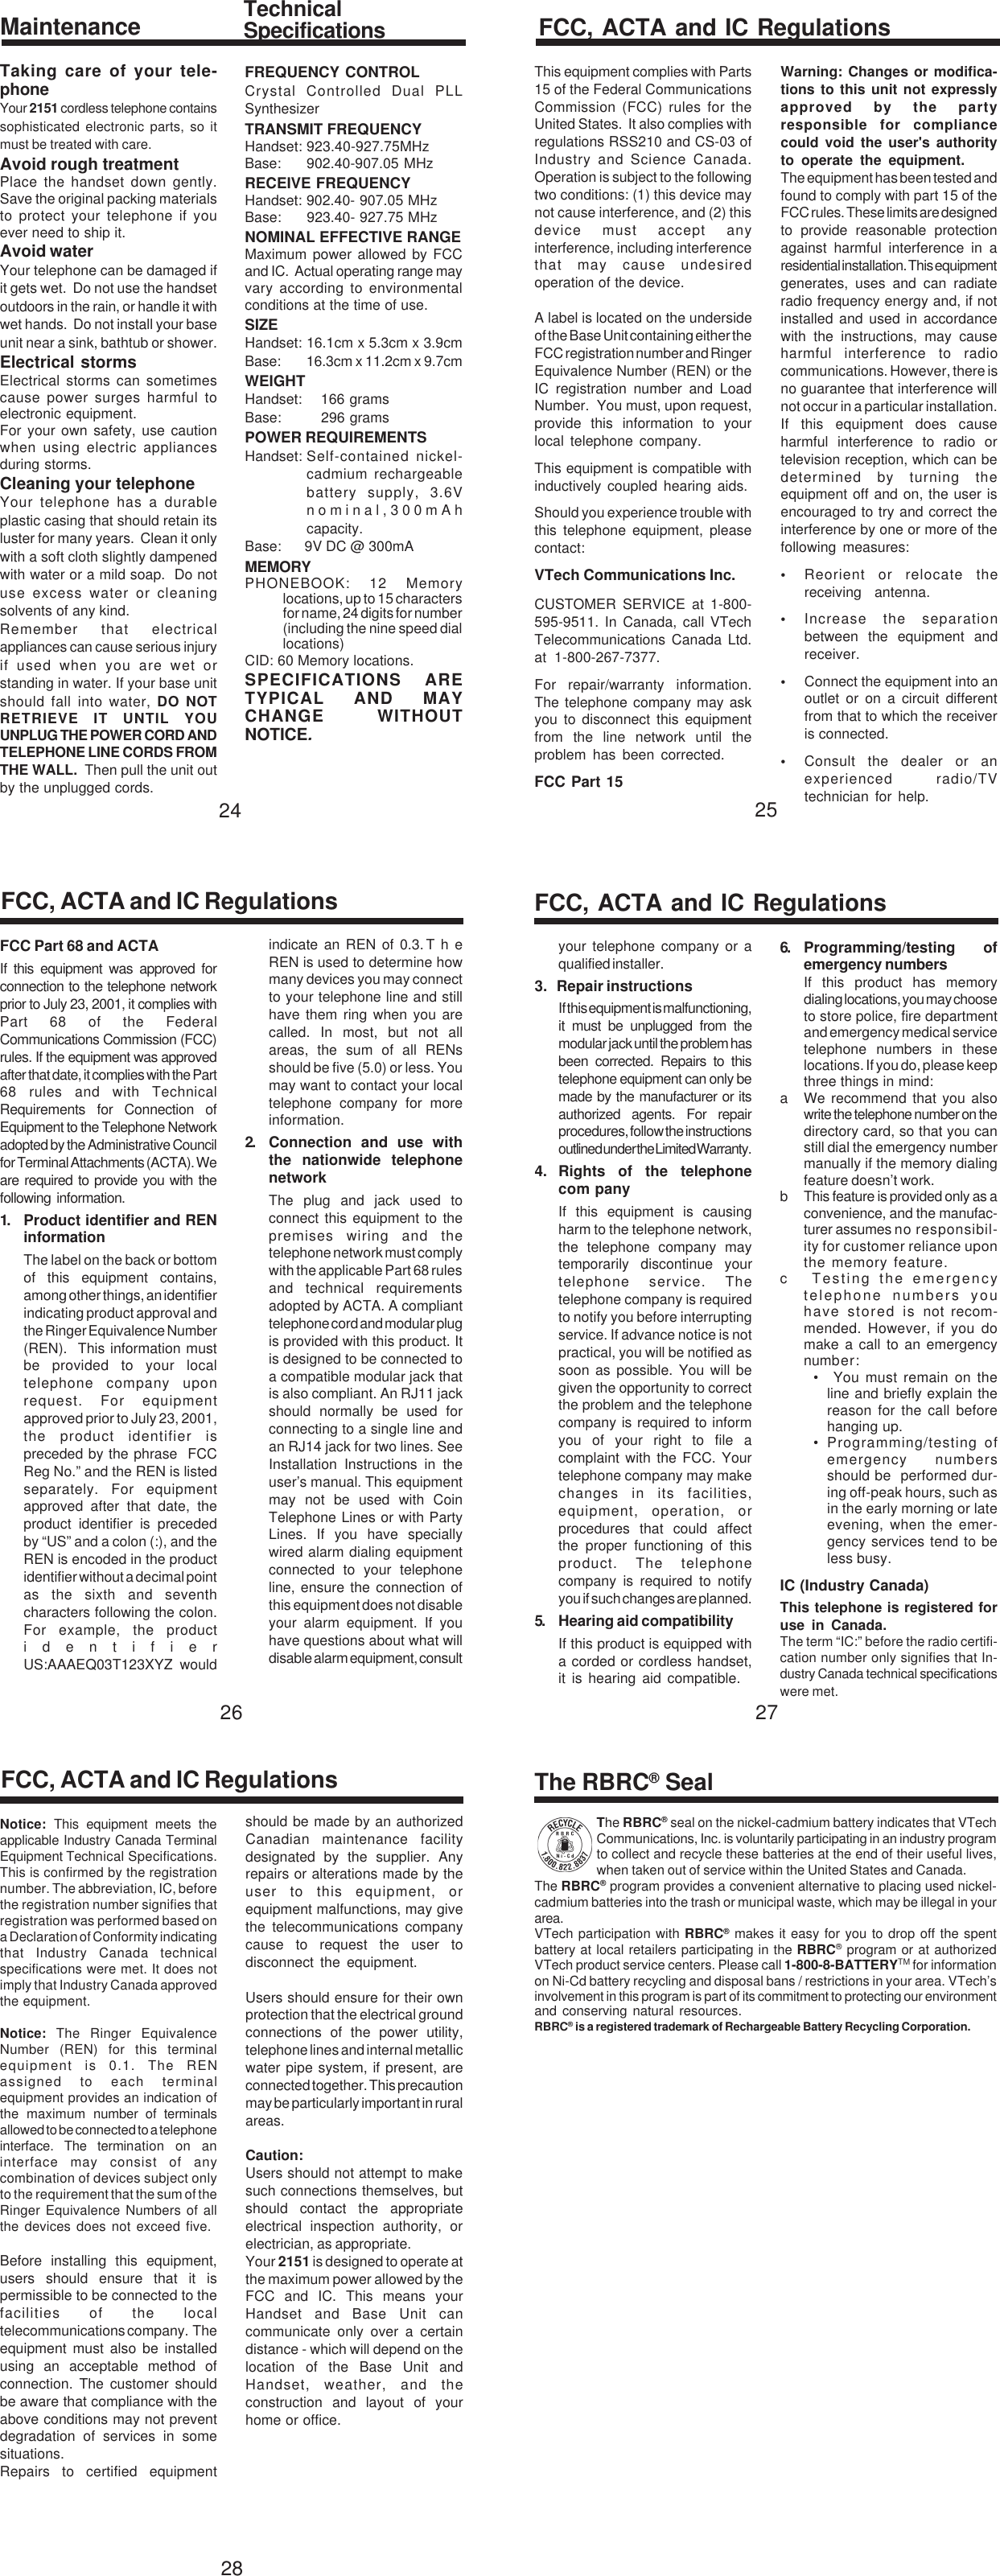 Page 5 of 6 - VTech T2151 91-00270-020-000.2151.R0 User Manual  To The A481a7ec-a103-4a0b-b338-efb4586a1883